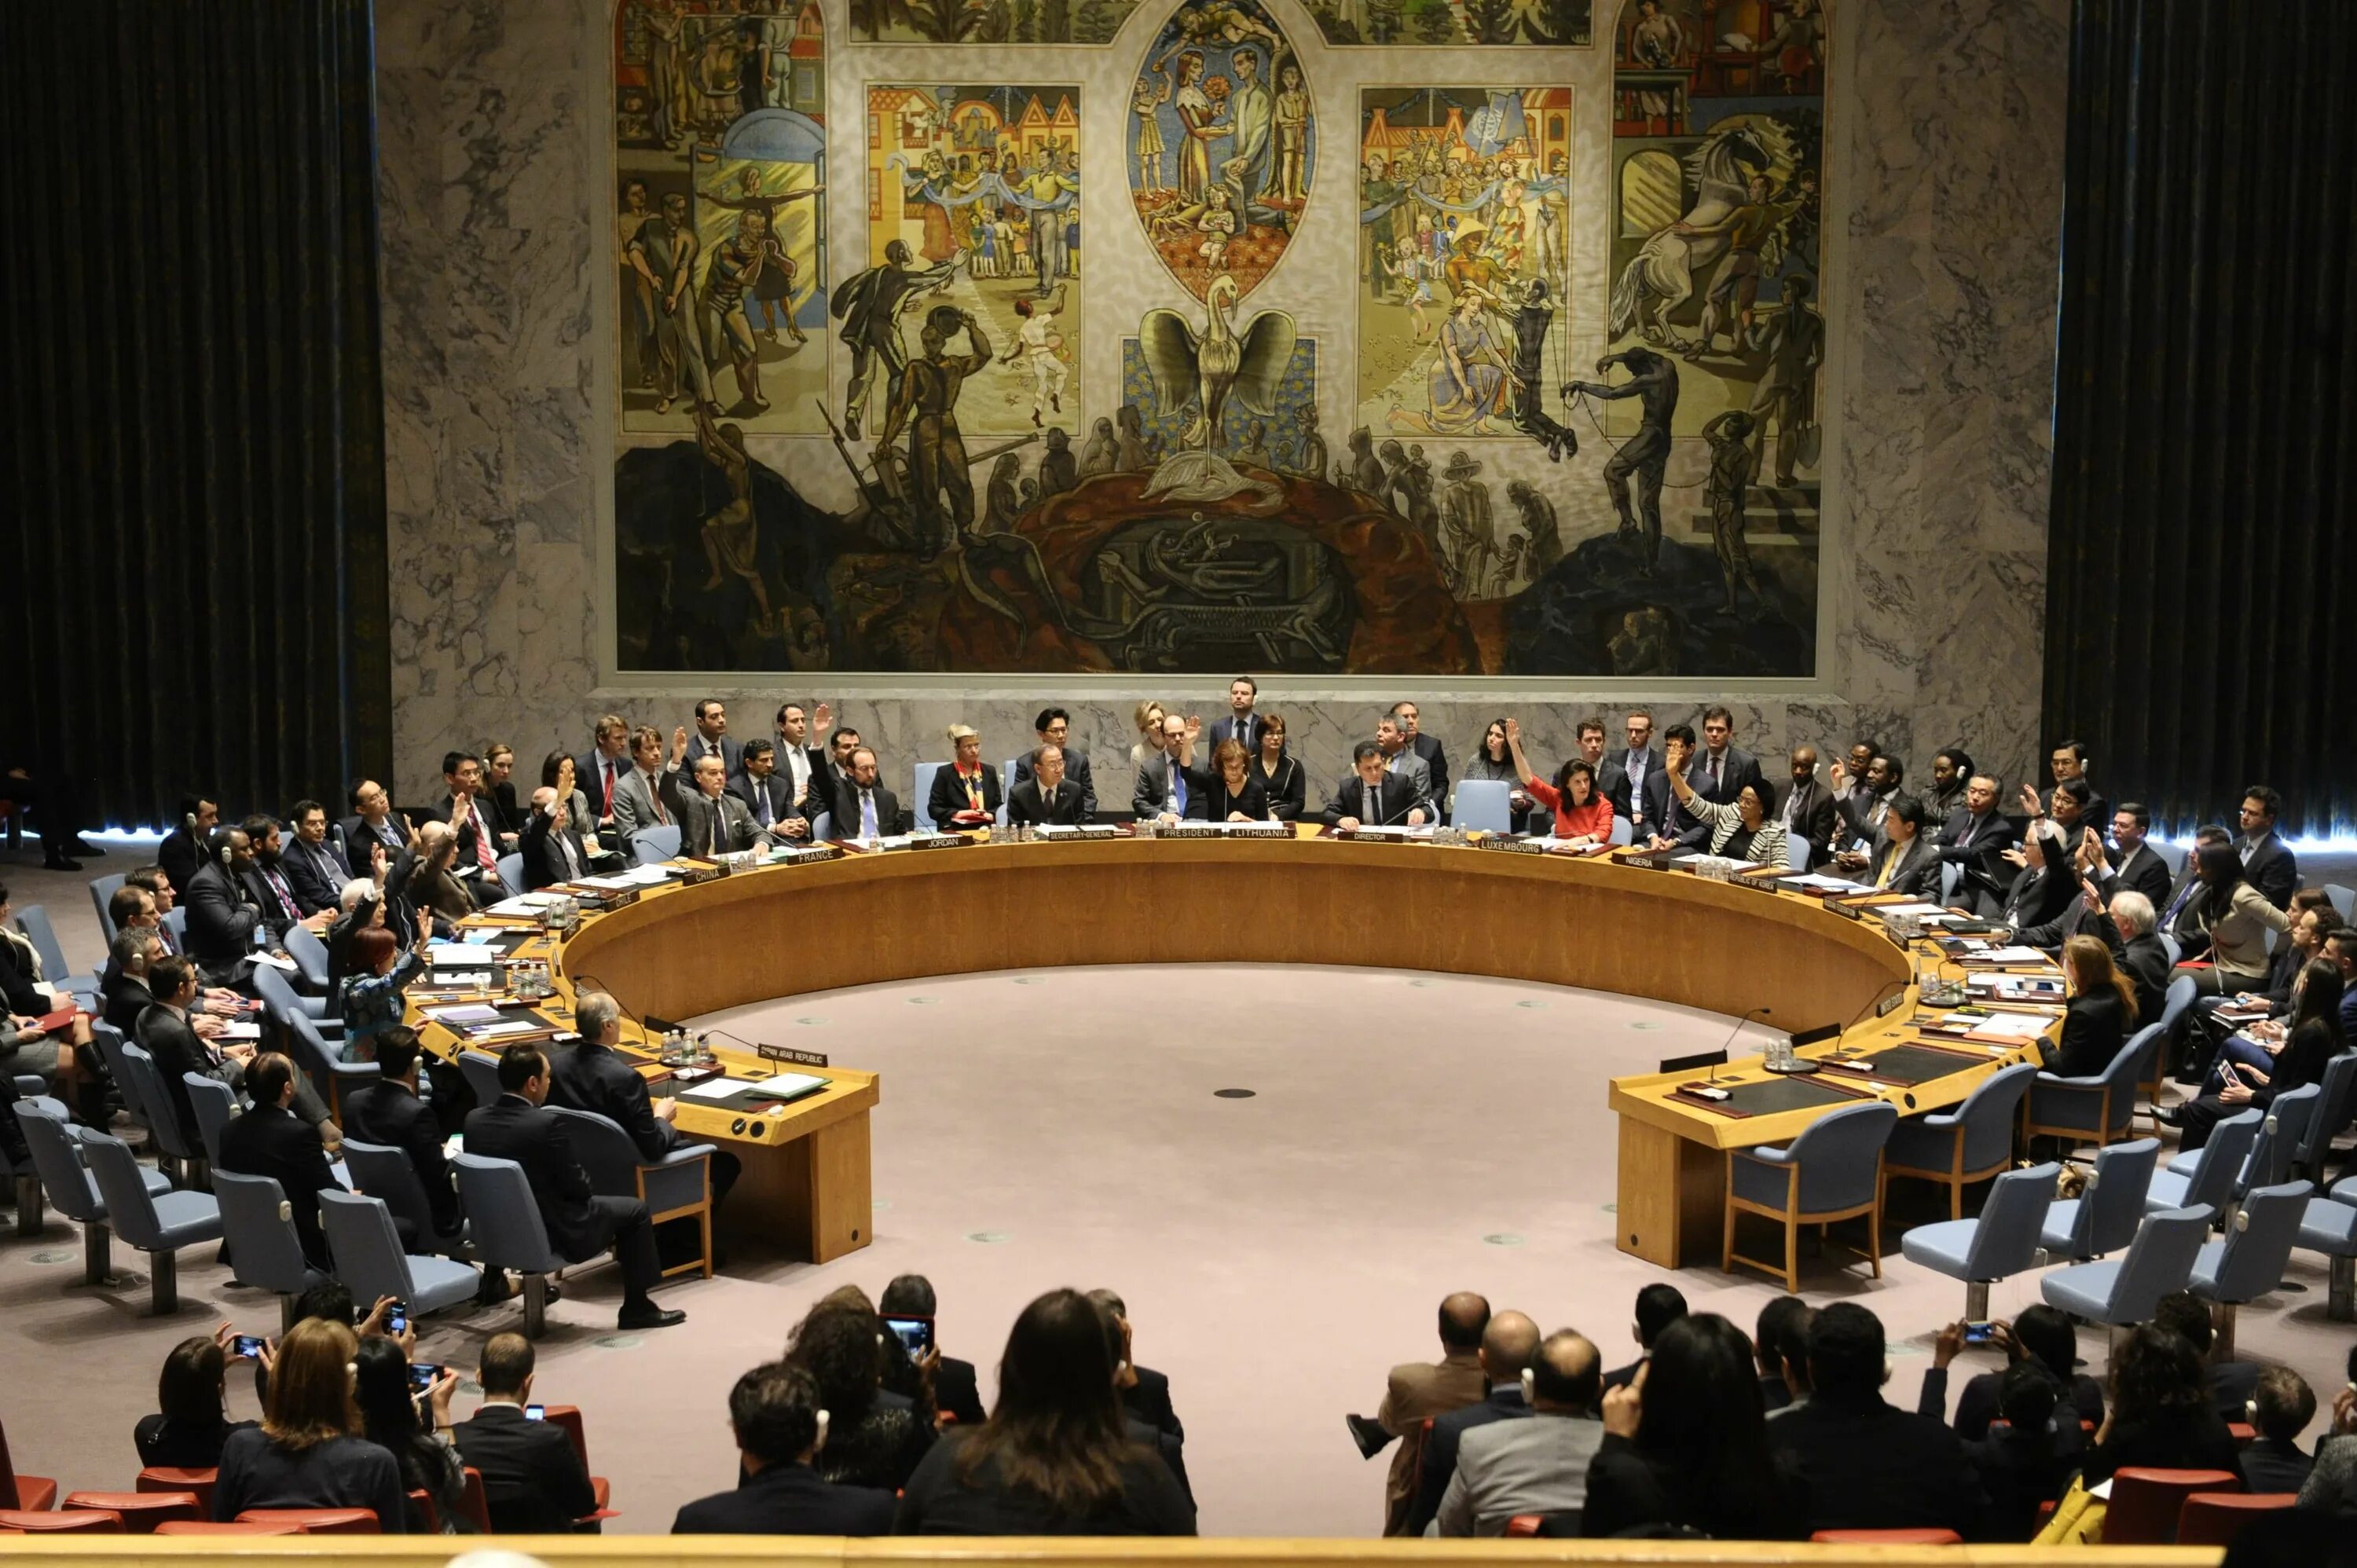 Сами оон. Зал совета безопасности ООН. Зал заседаний совета безопасности ООН. Зал заседаний Совбеза ООН. Заседание совета безопасности ООН.